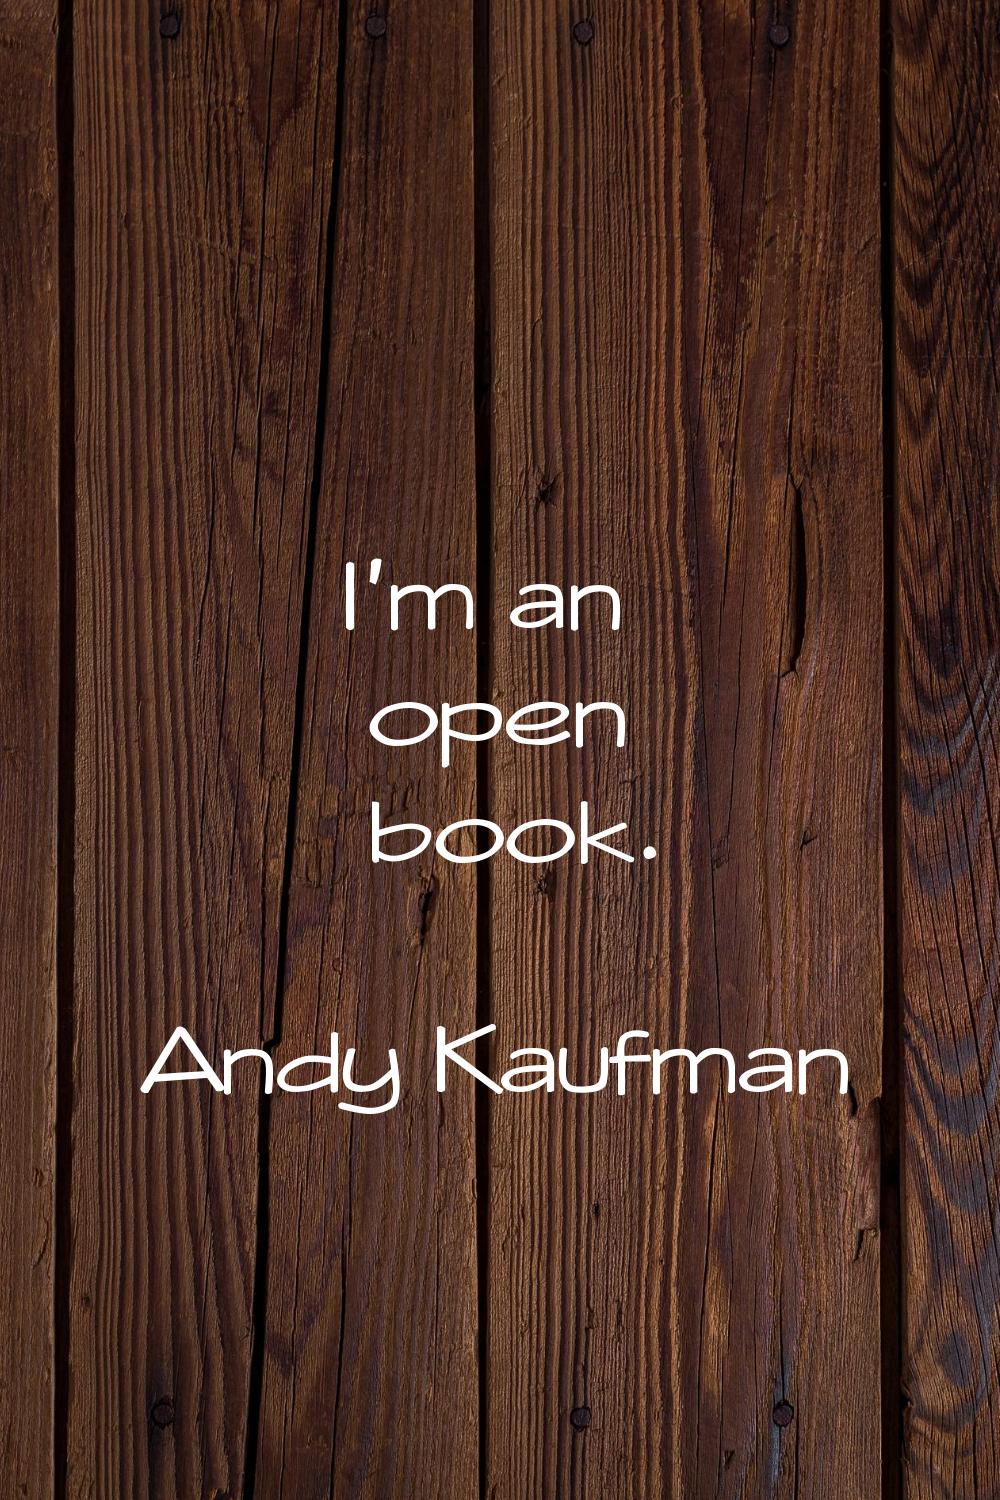 I'm an open book.